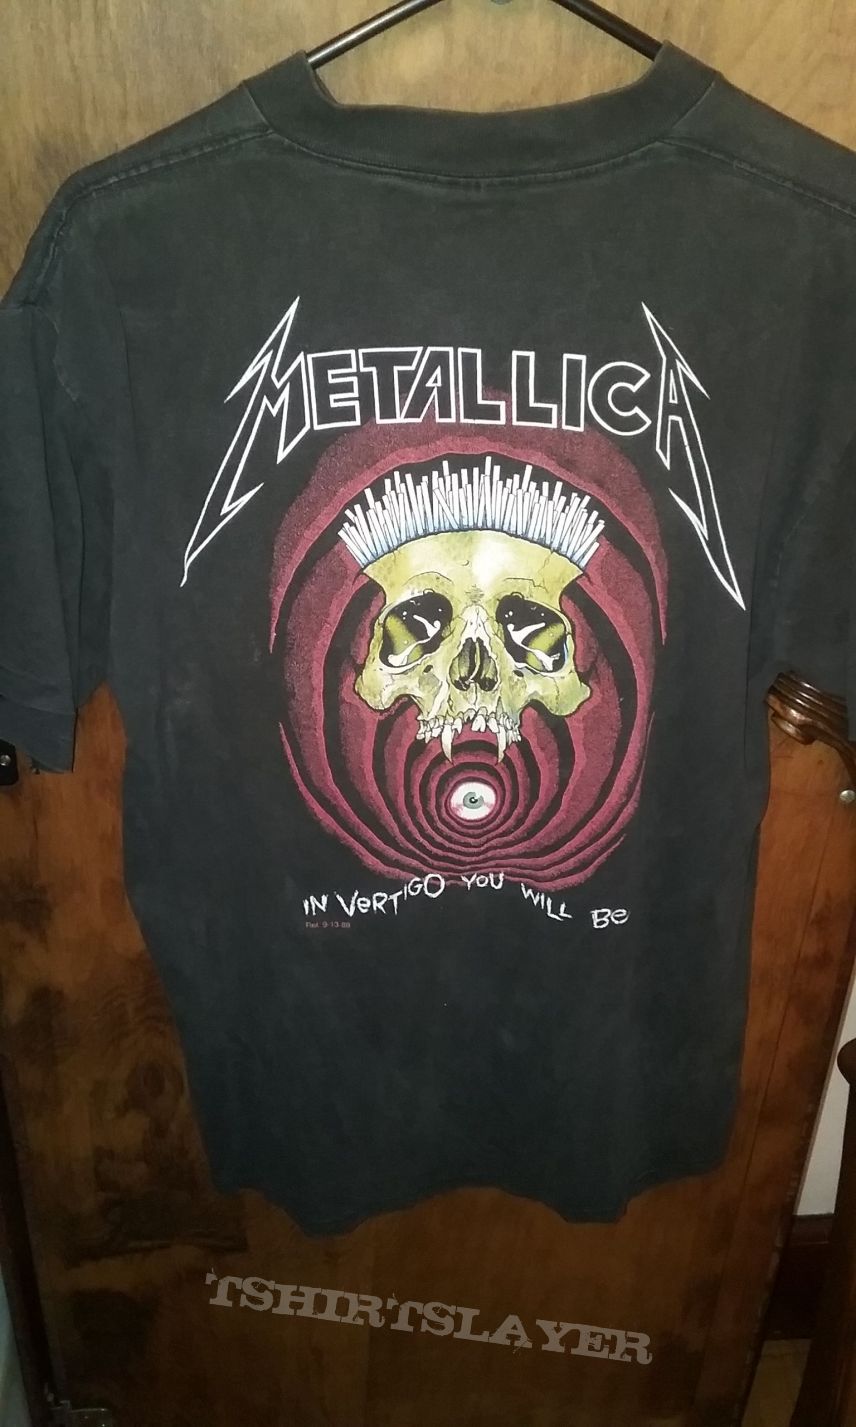 Metallica Shortest Straw T-shirt